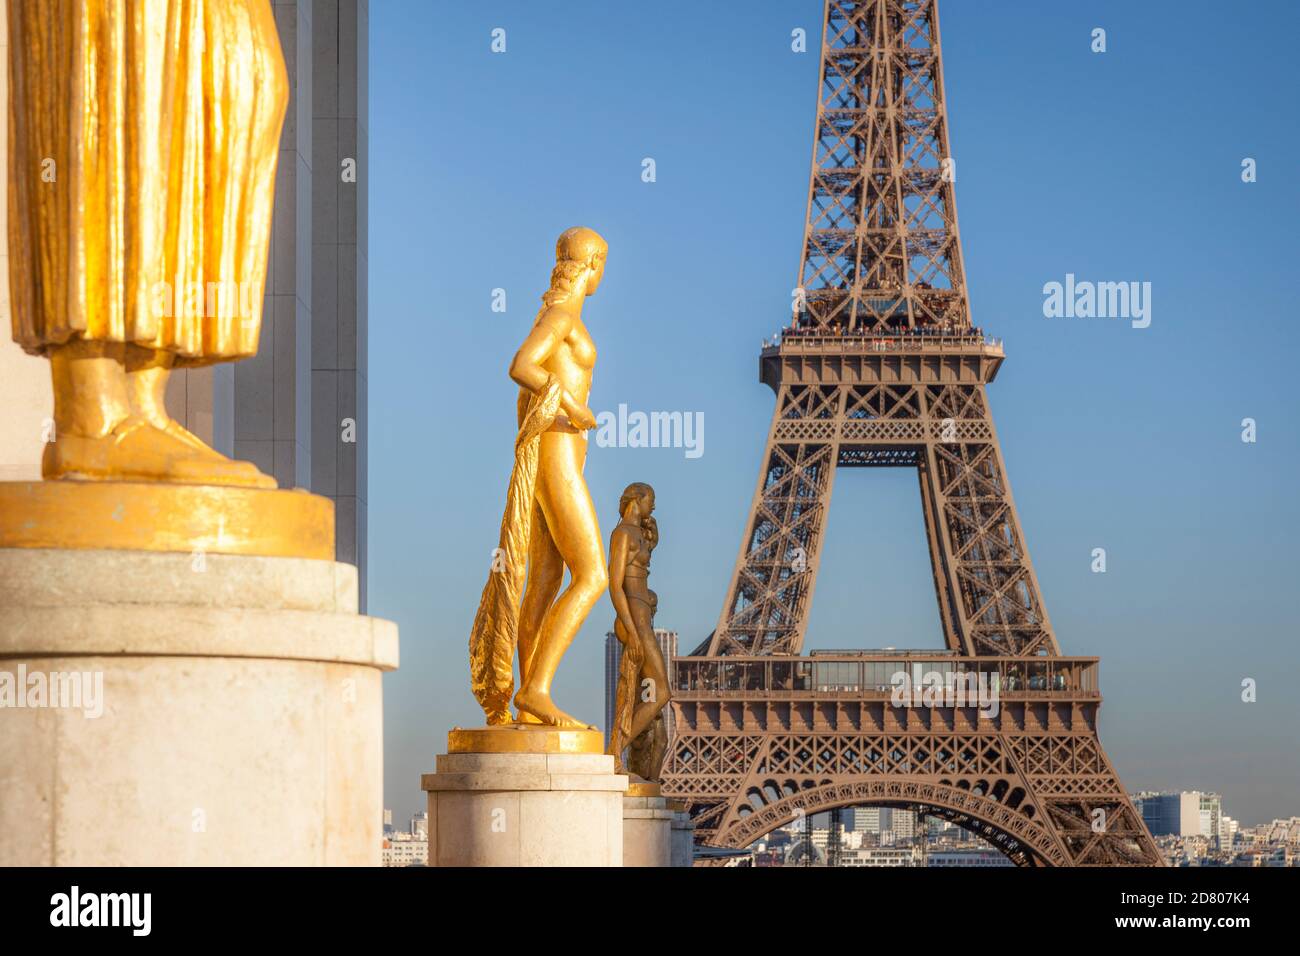 Gold figures line Place du Trocadero with Eiffel Tower beyond, Palais de Chaillot, Place du Trocadero, Paris, France Stock Photo